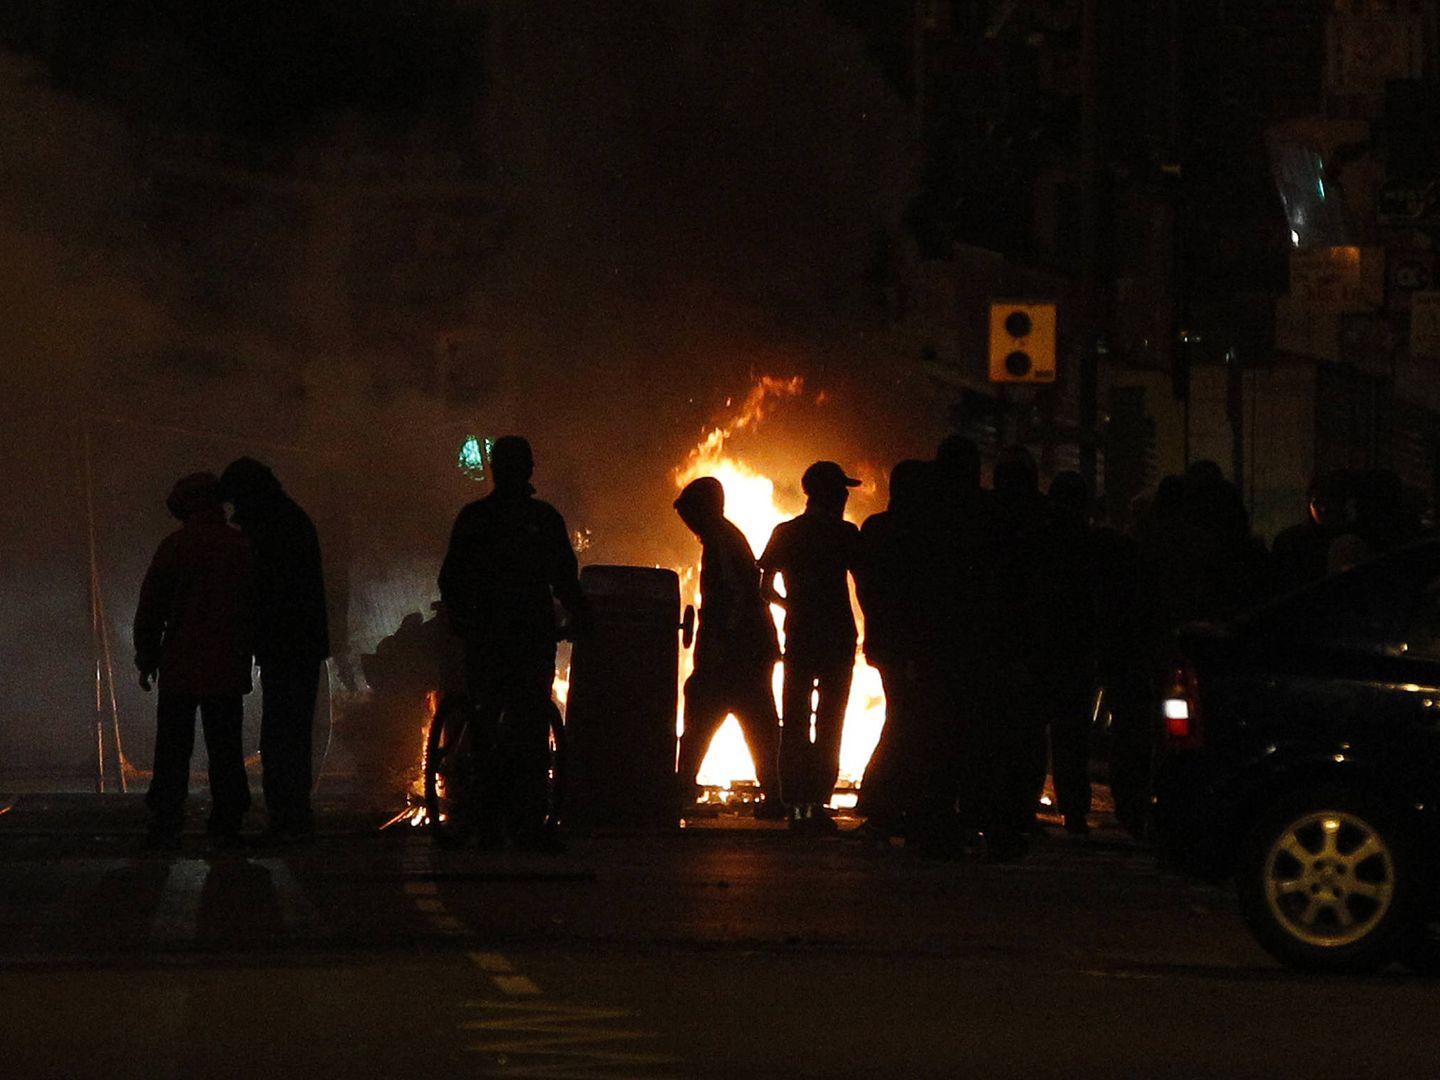 En el verano de 2011, varias ciudades inglesas sufrieron disturbios callejeros. (Reuters/Phil Noble)